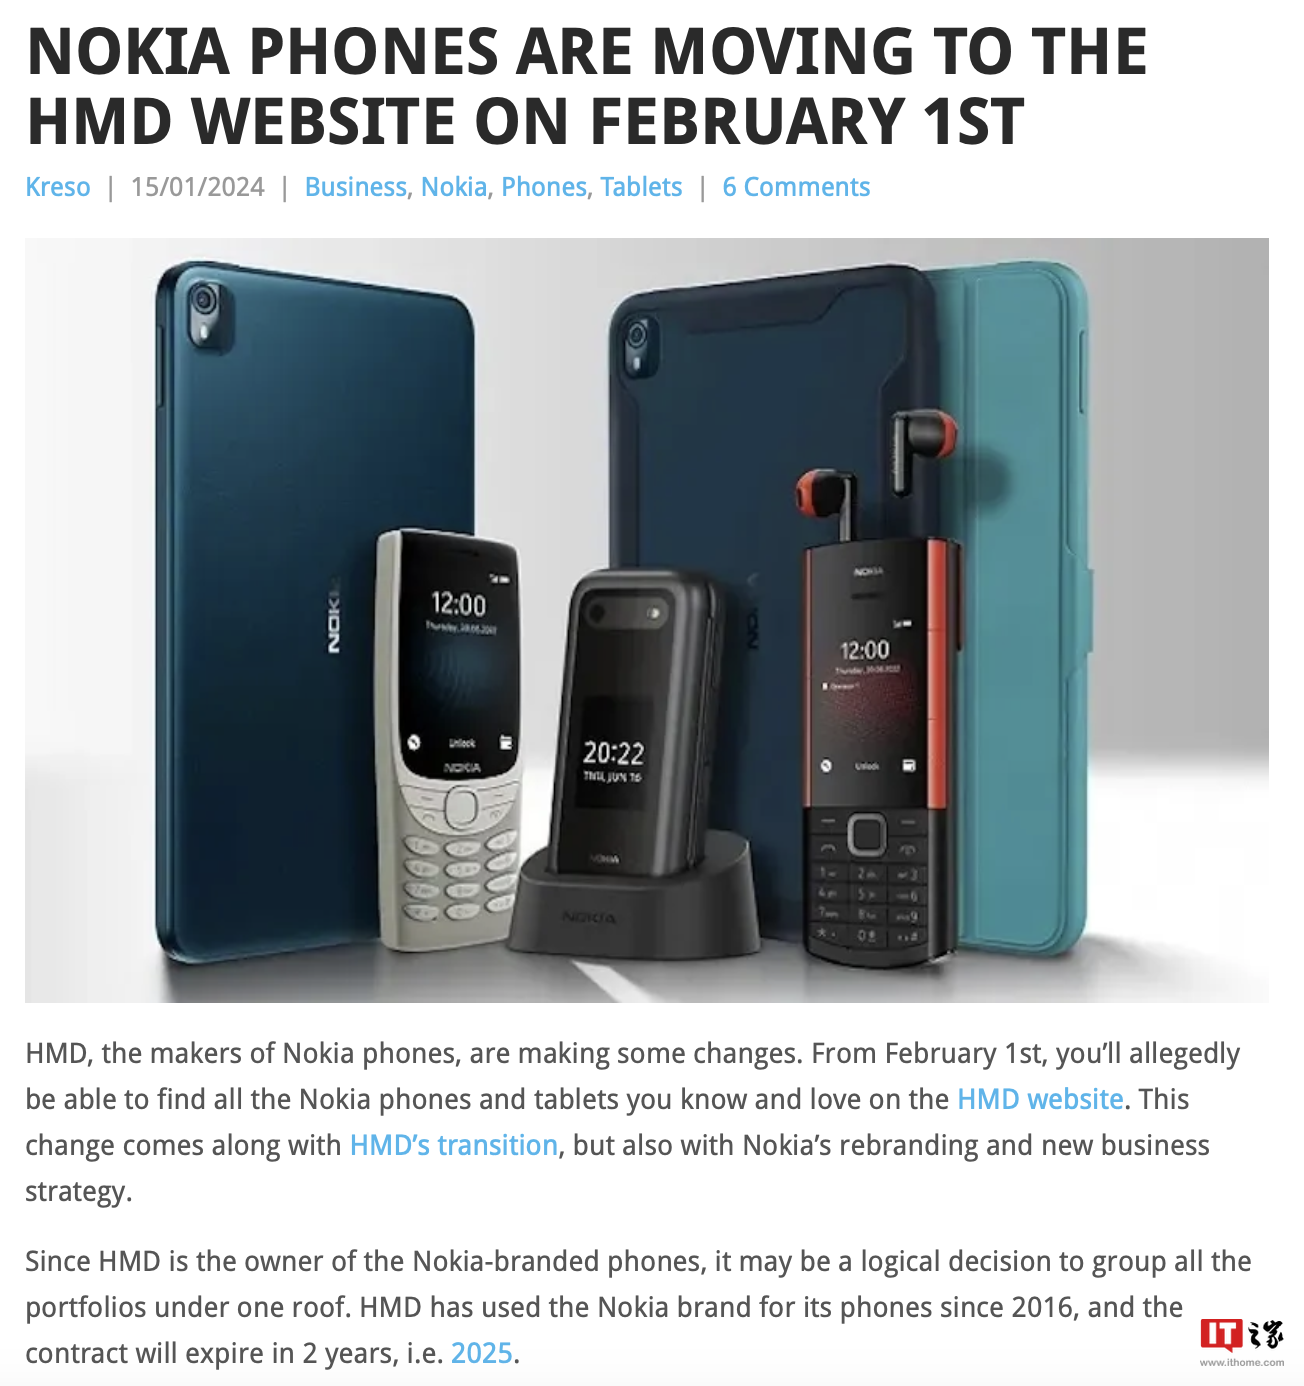 消息称诺基亚官网 2 月 1 日起移除手机板块页面，届时由 HMD Global 网站提供相关内容